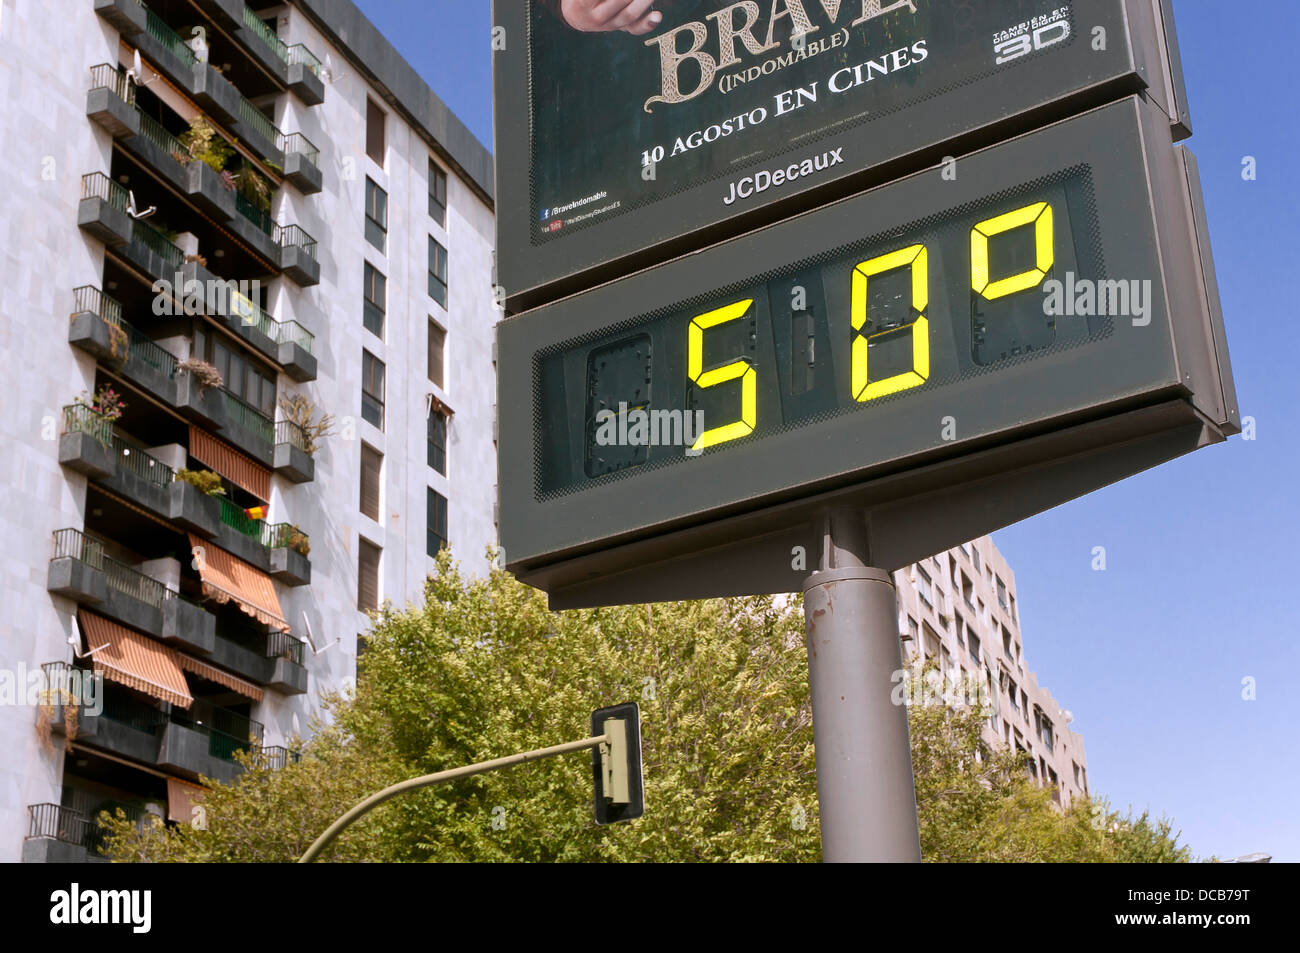 Termometro urbana, temperature estreme, segnapunti digitale, Siviglia, regione dell'Andalusia, Spagna, Europa Foto Stock